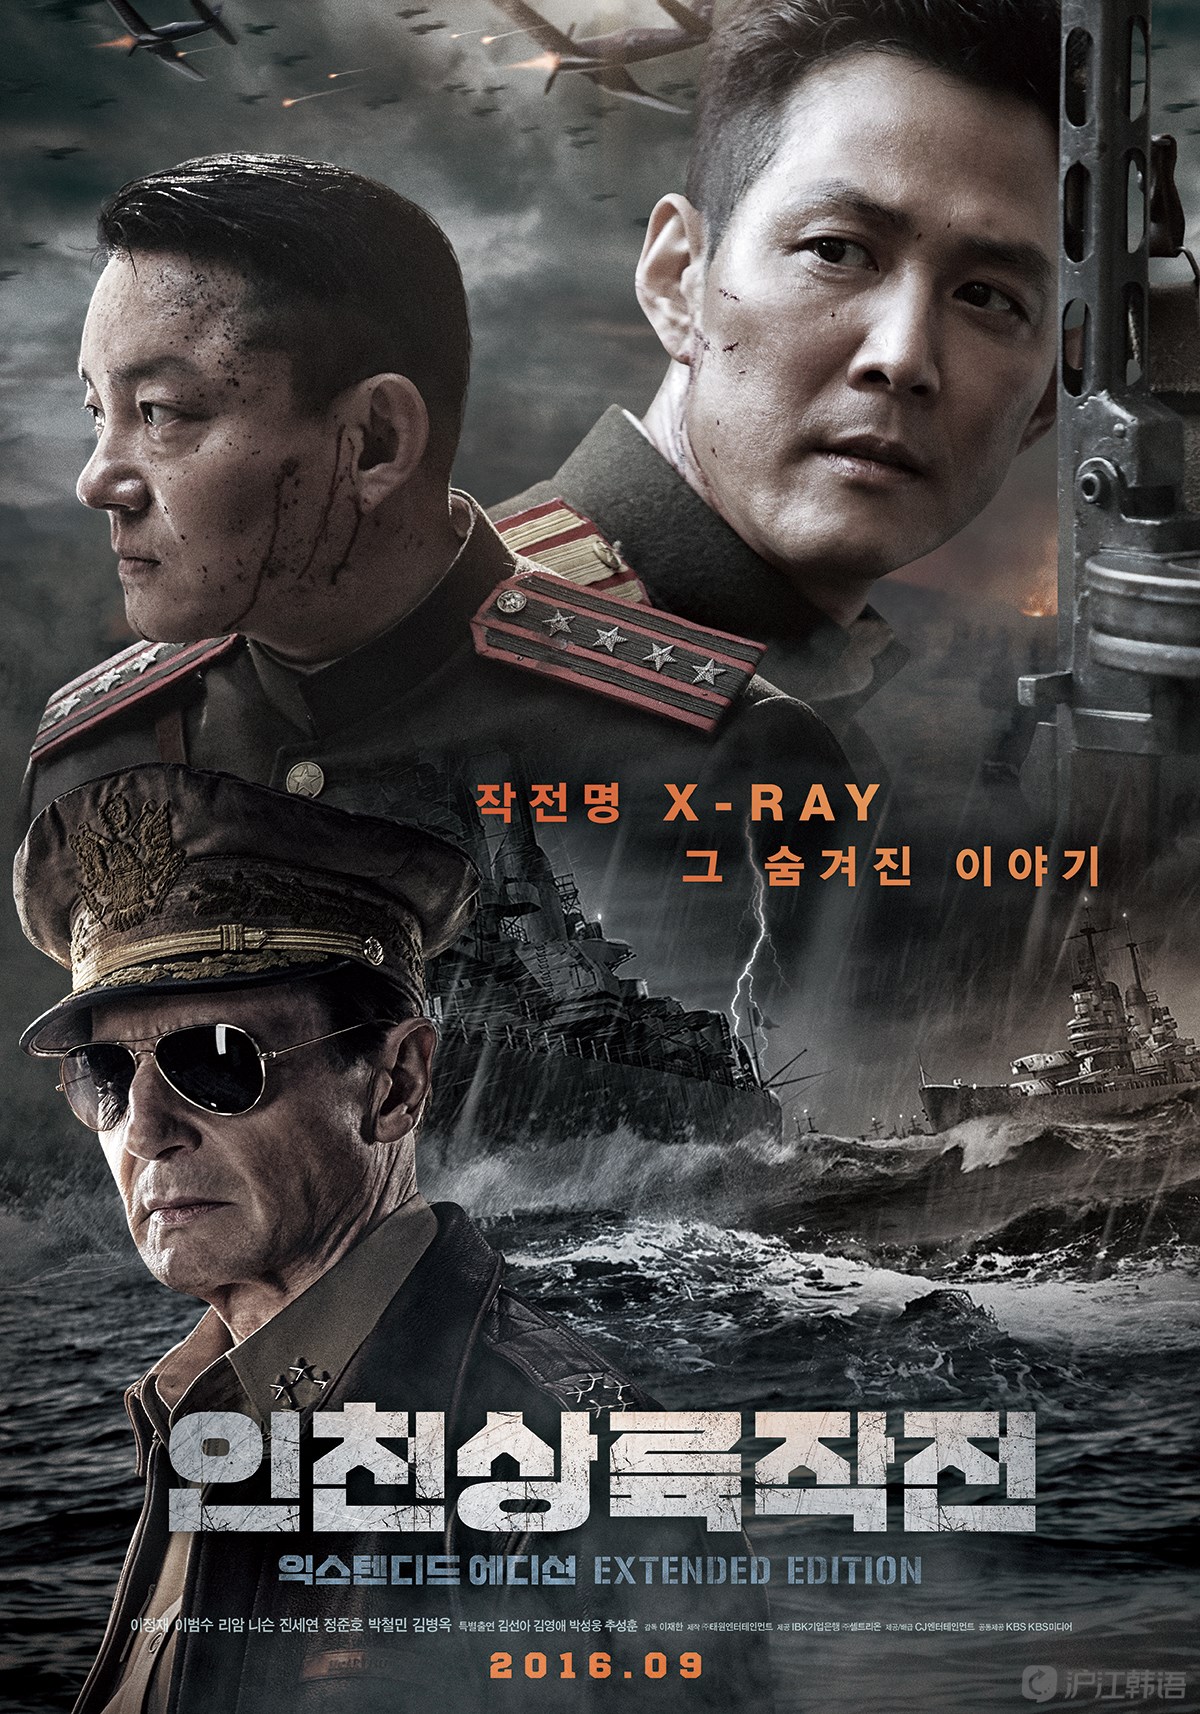 韩国电影推荐:《仁川登陆作战》改变历史一战